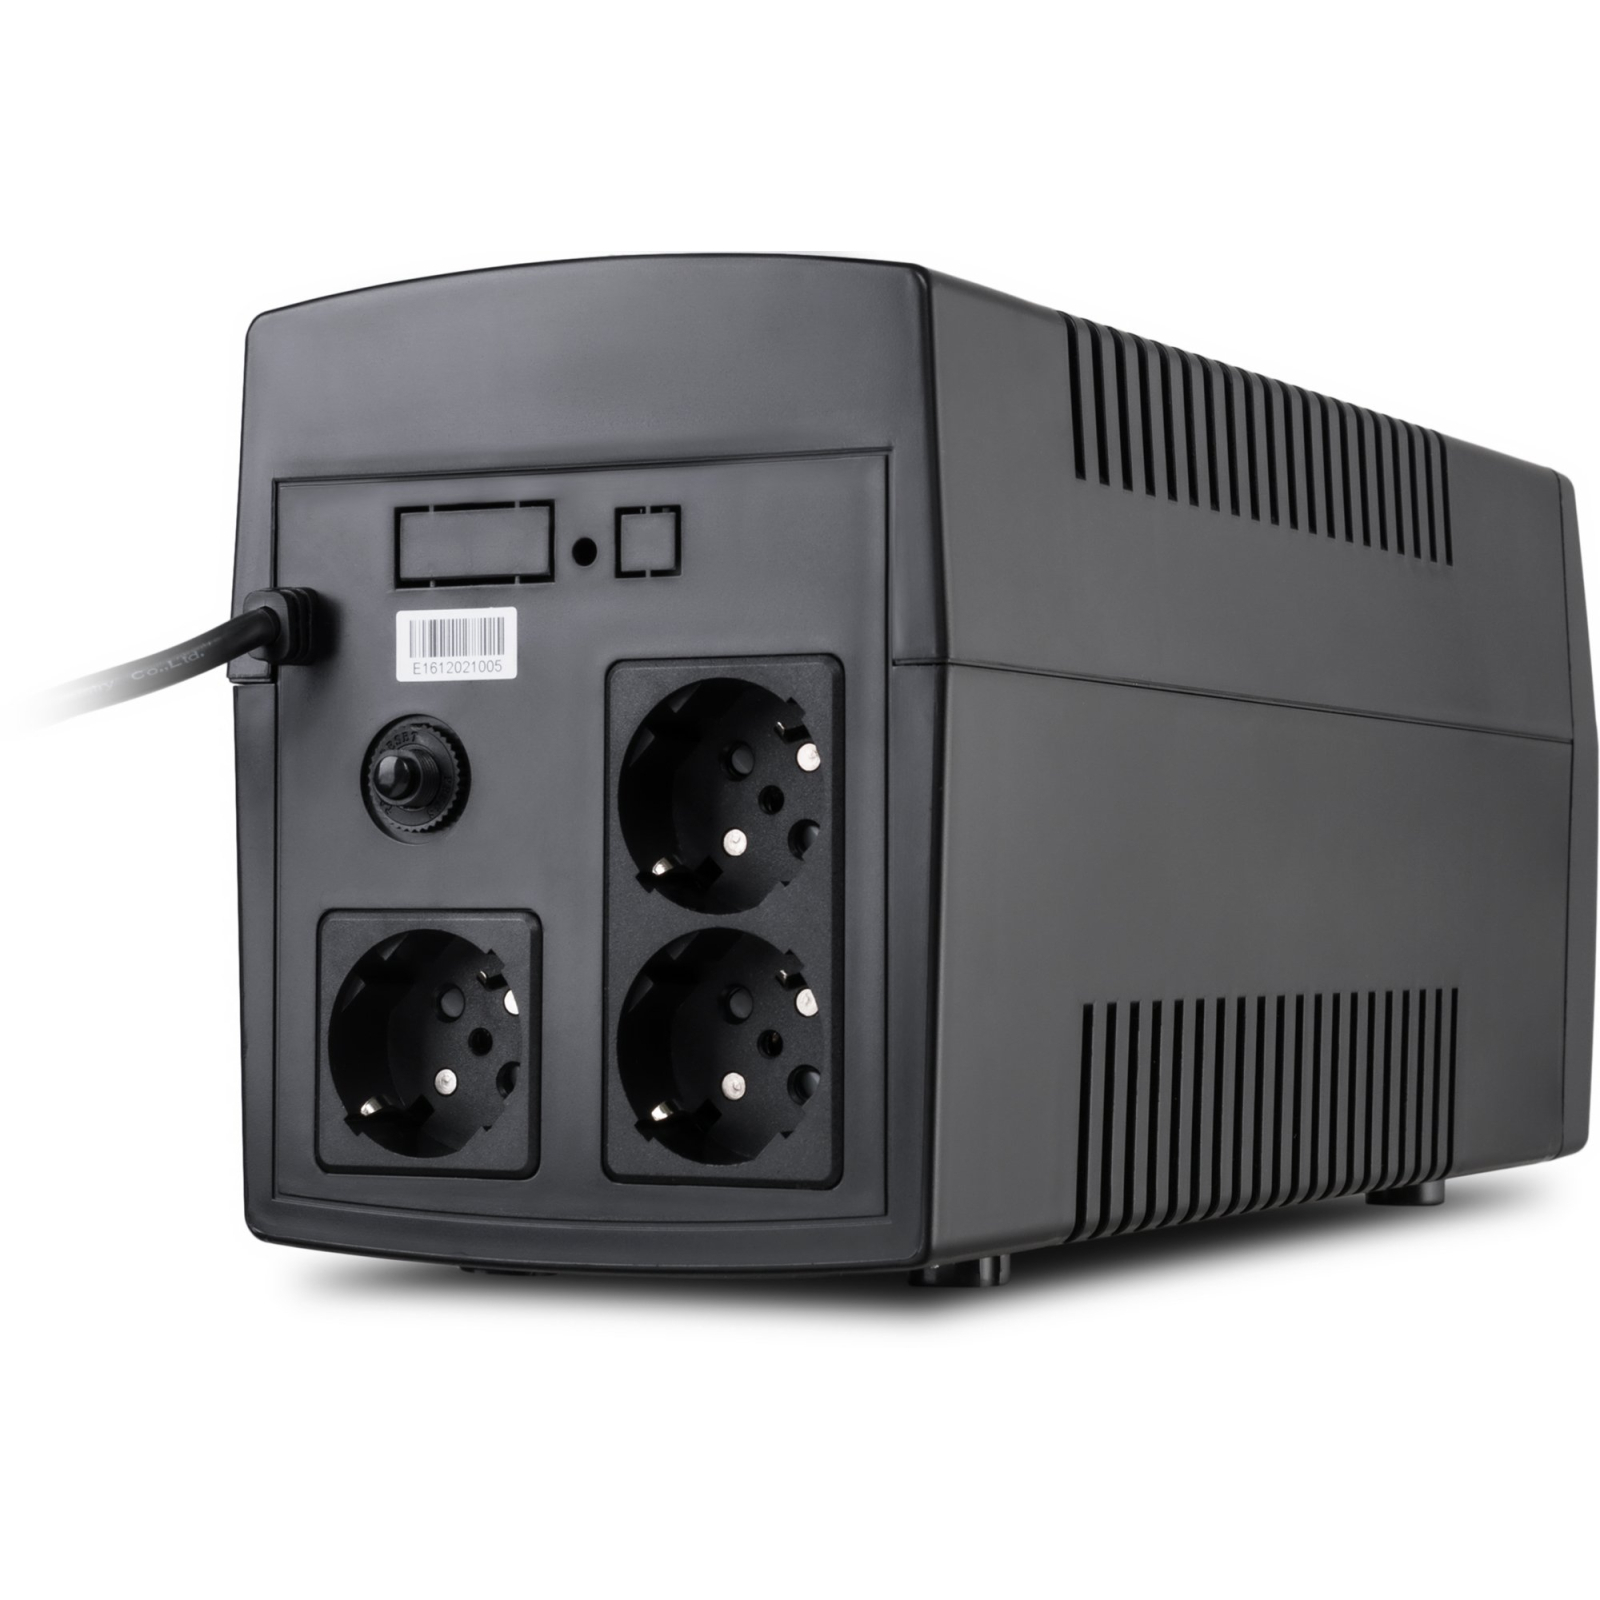 Пристрій безперебійного живлення Vinga LED 1500VA plastic case (VPE-1500P) зображення 4